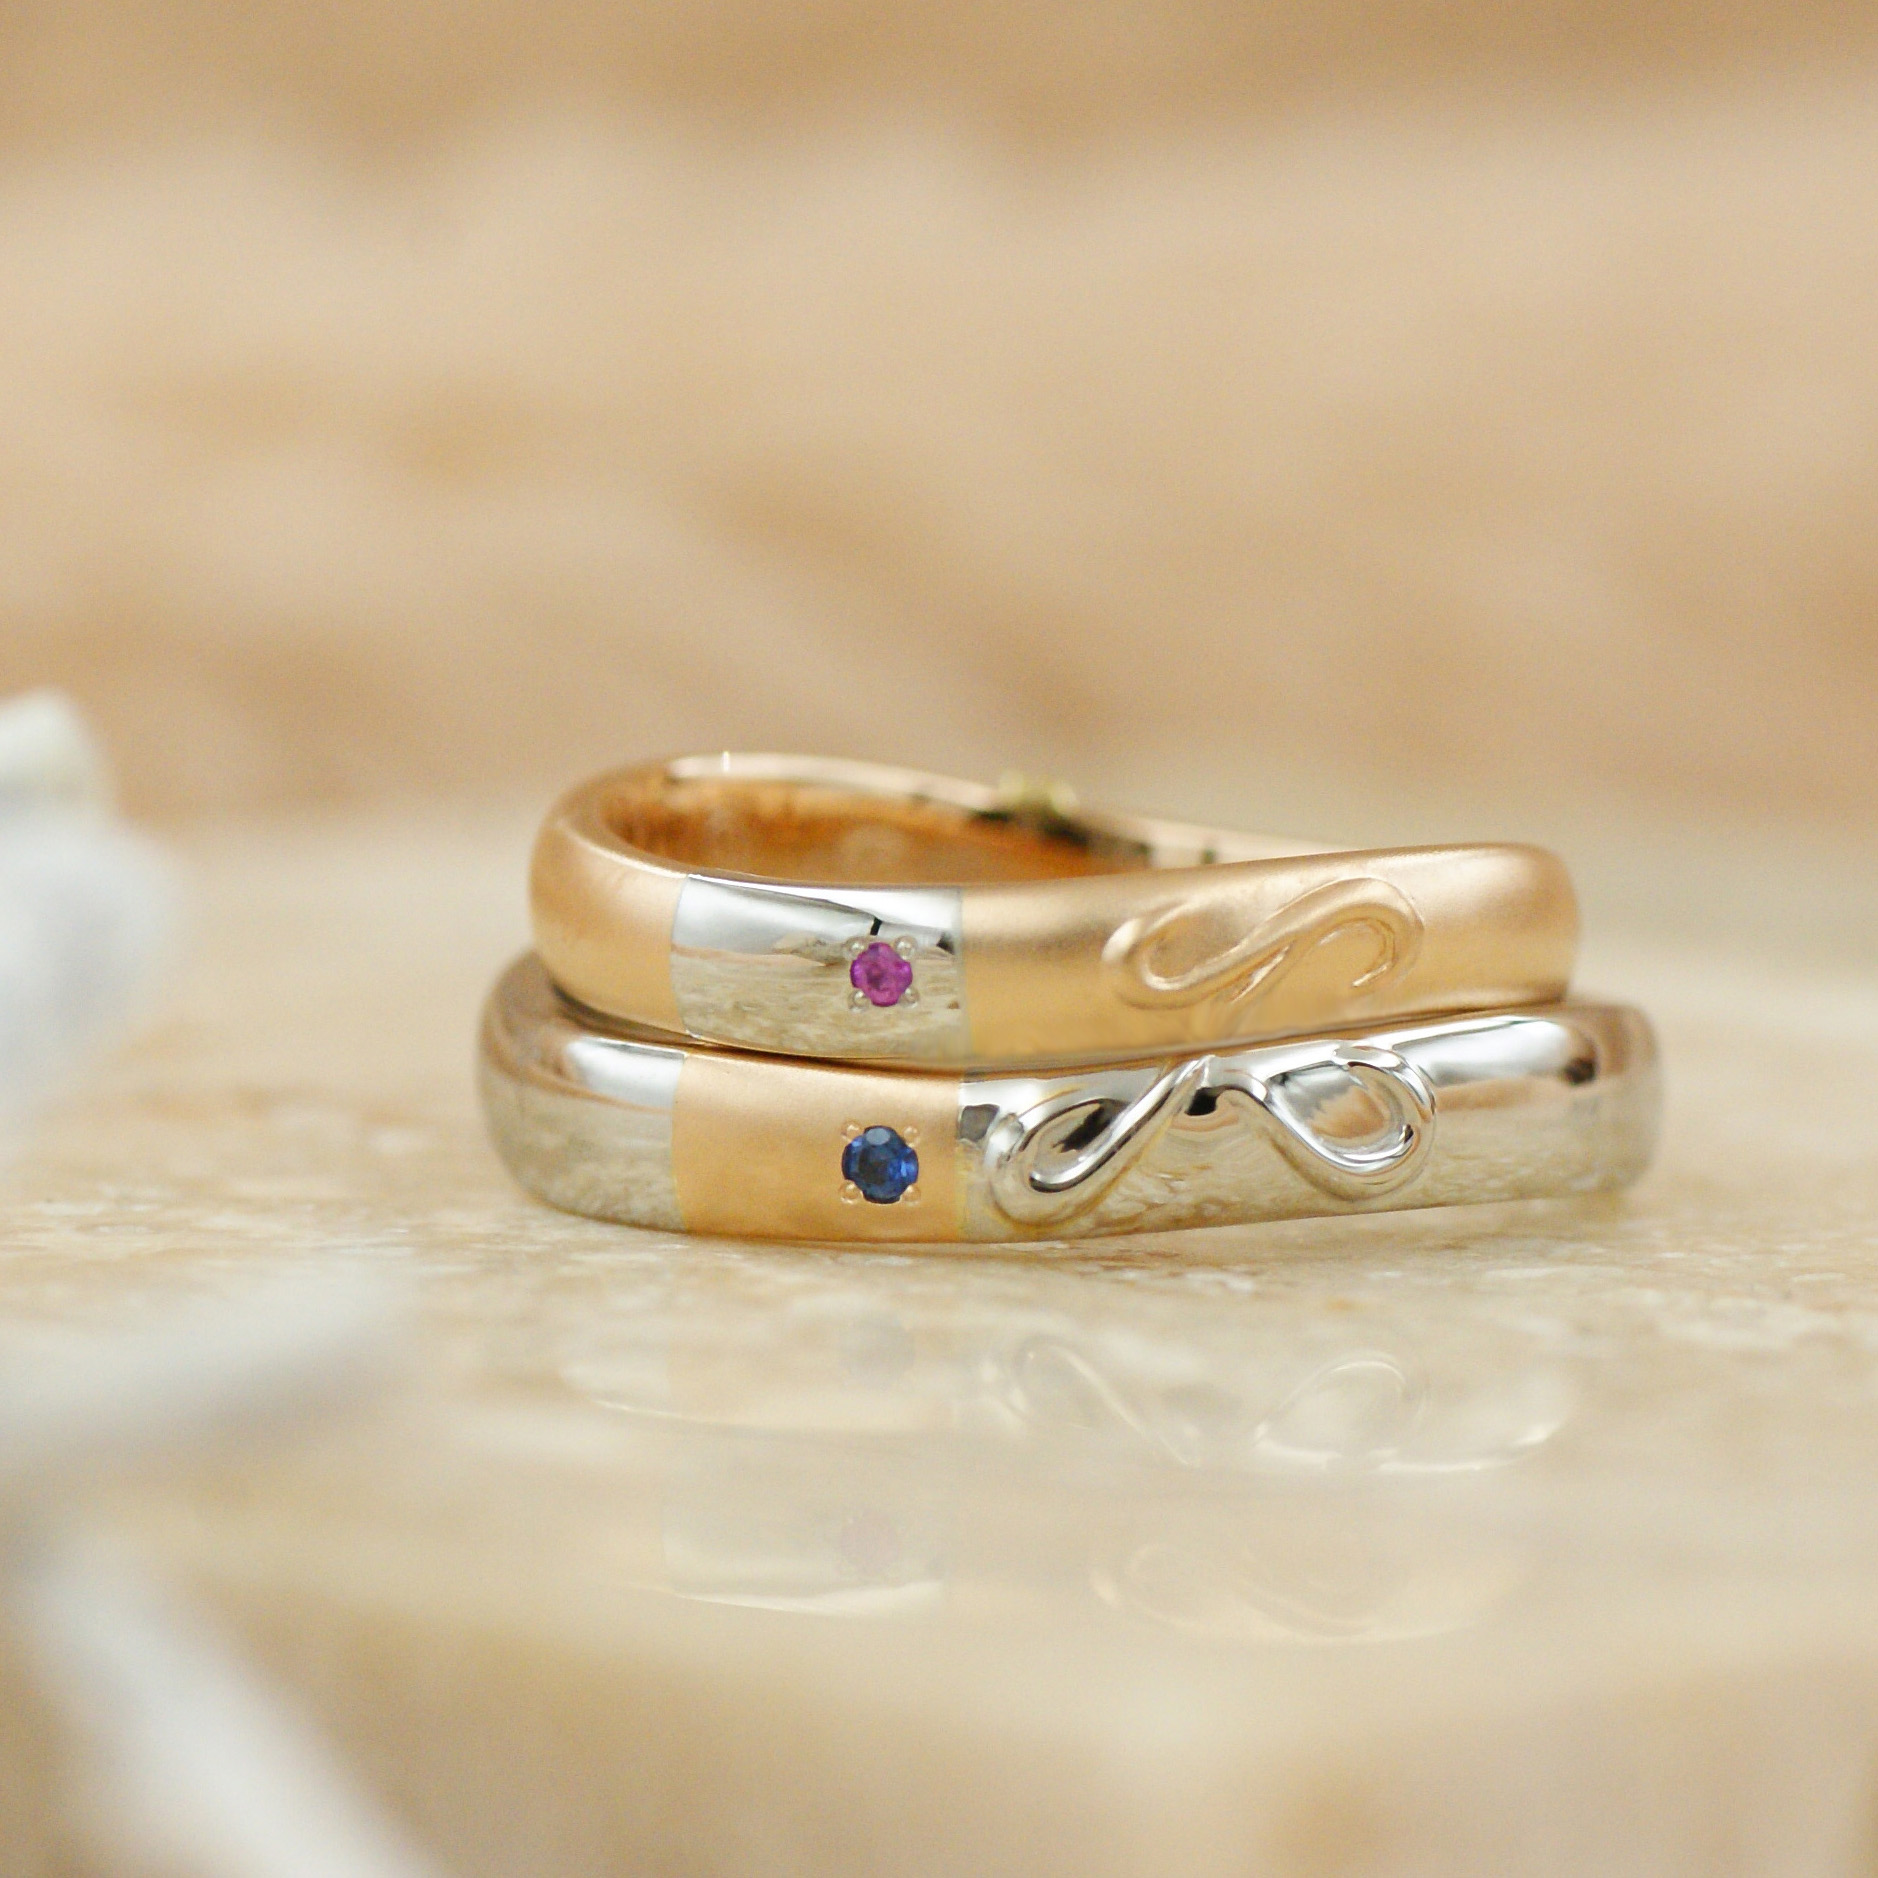 「carving*模様*」リンクする結婚指輪/kazariyaYui福島県郡山市